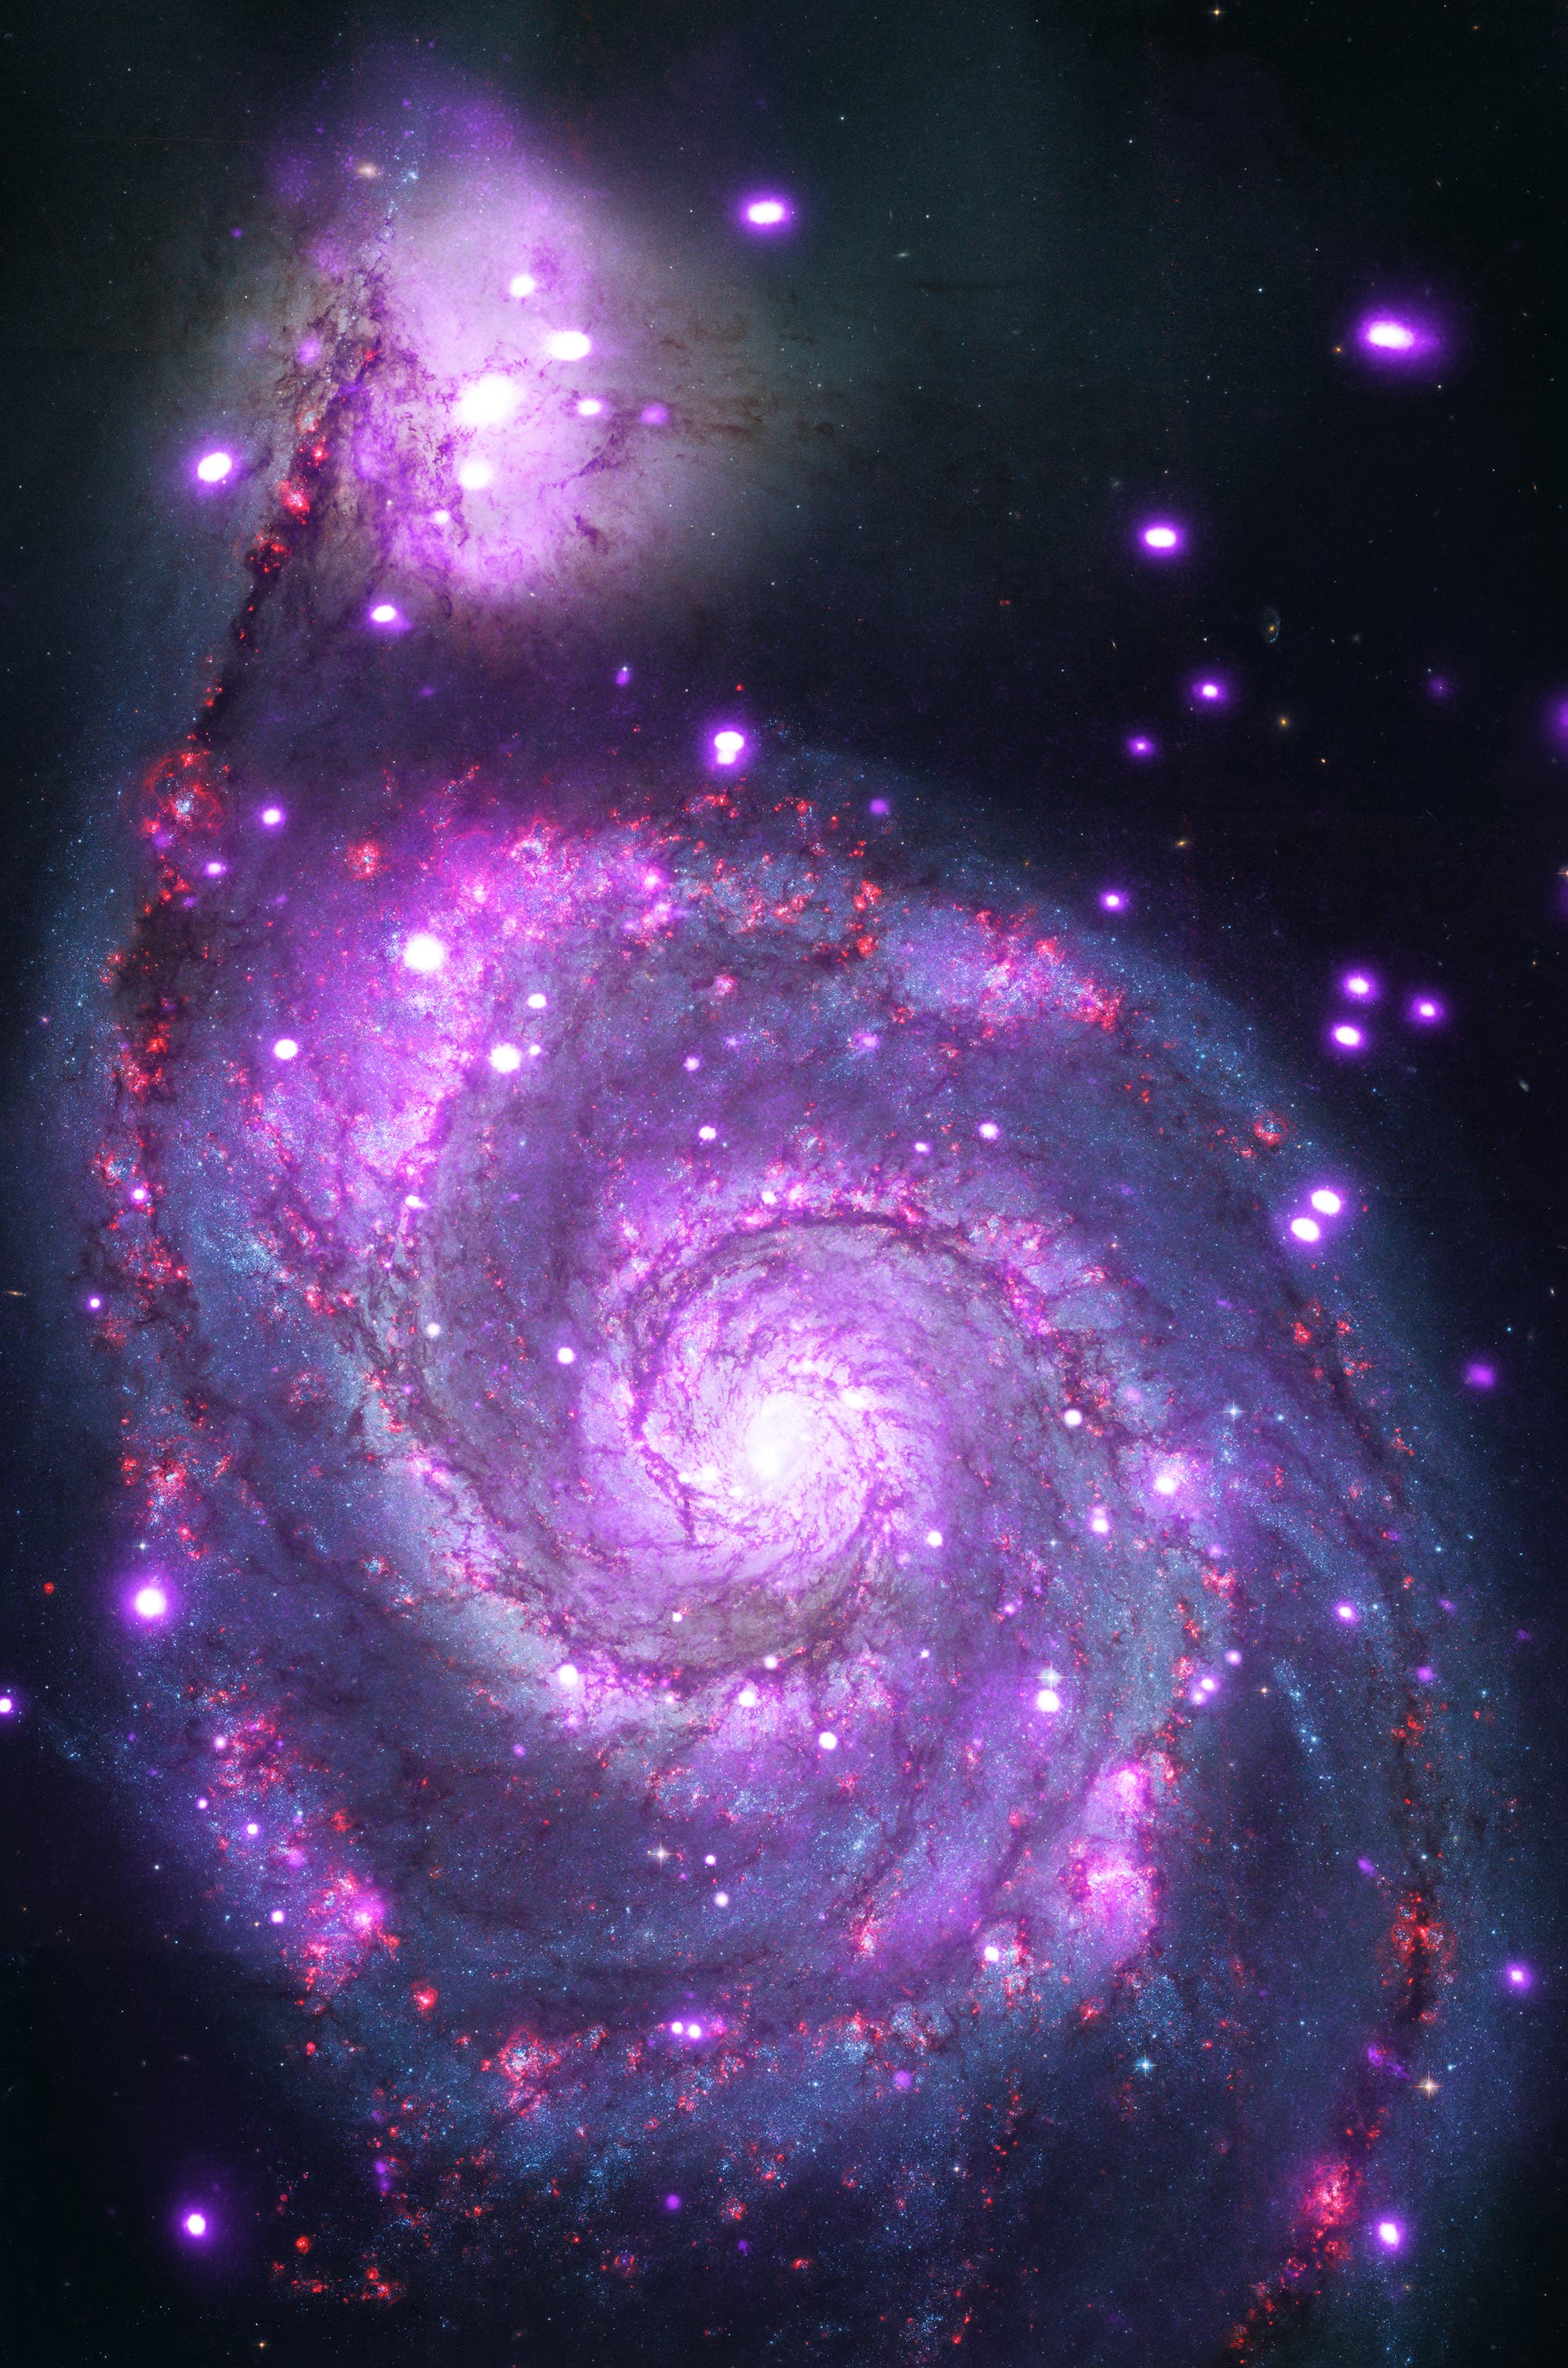 Die Whirlpool-Galaxie M51 mag im sichtbaren Bereich wie eine ganz normale, wenn auch sehr hübsche Spiralgalaxie aussehen. In diesem Komposit aus einer Aufnahme im sichtbaren Bereich des elektromagnetischen Spektrums sowie einer Aufnahme im Röntgenbereich mithilfe des Chandra-Röntgenteleskops sind zusätzlich die hell leuchtenden Röntgenquellen in der Whirlpool-Galaxie zu erkennen.  